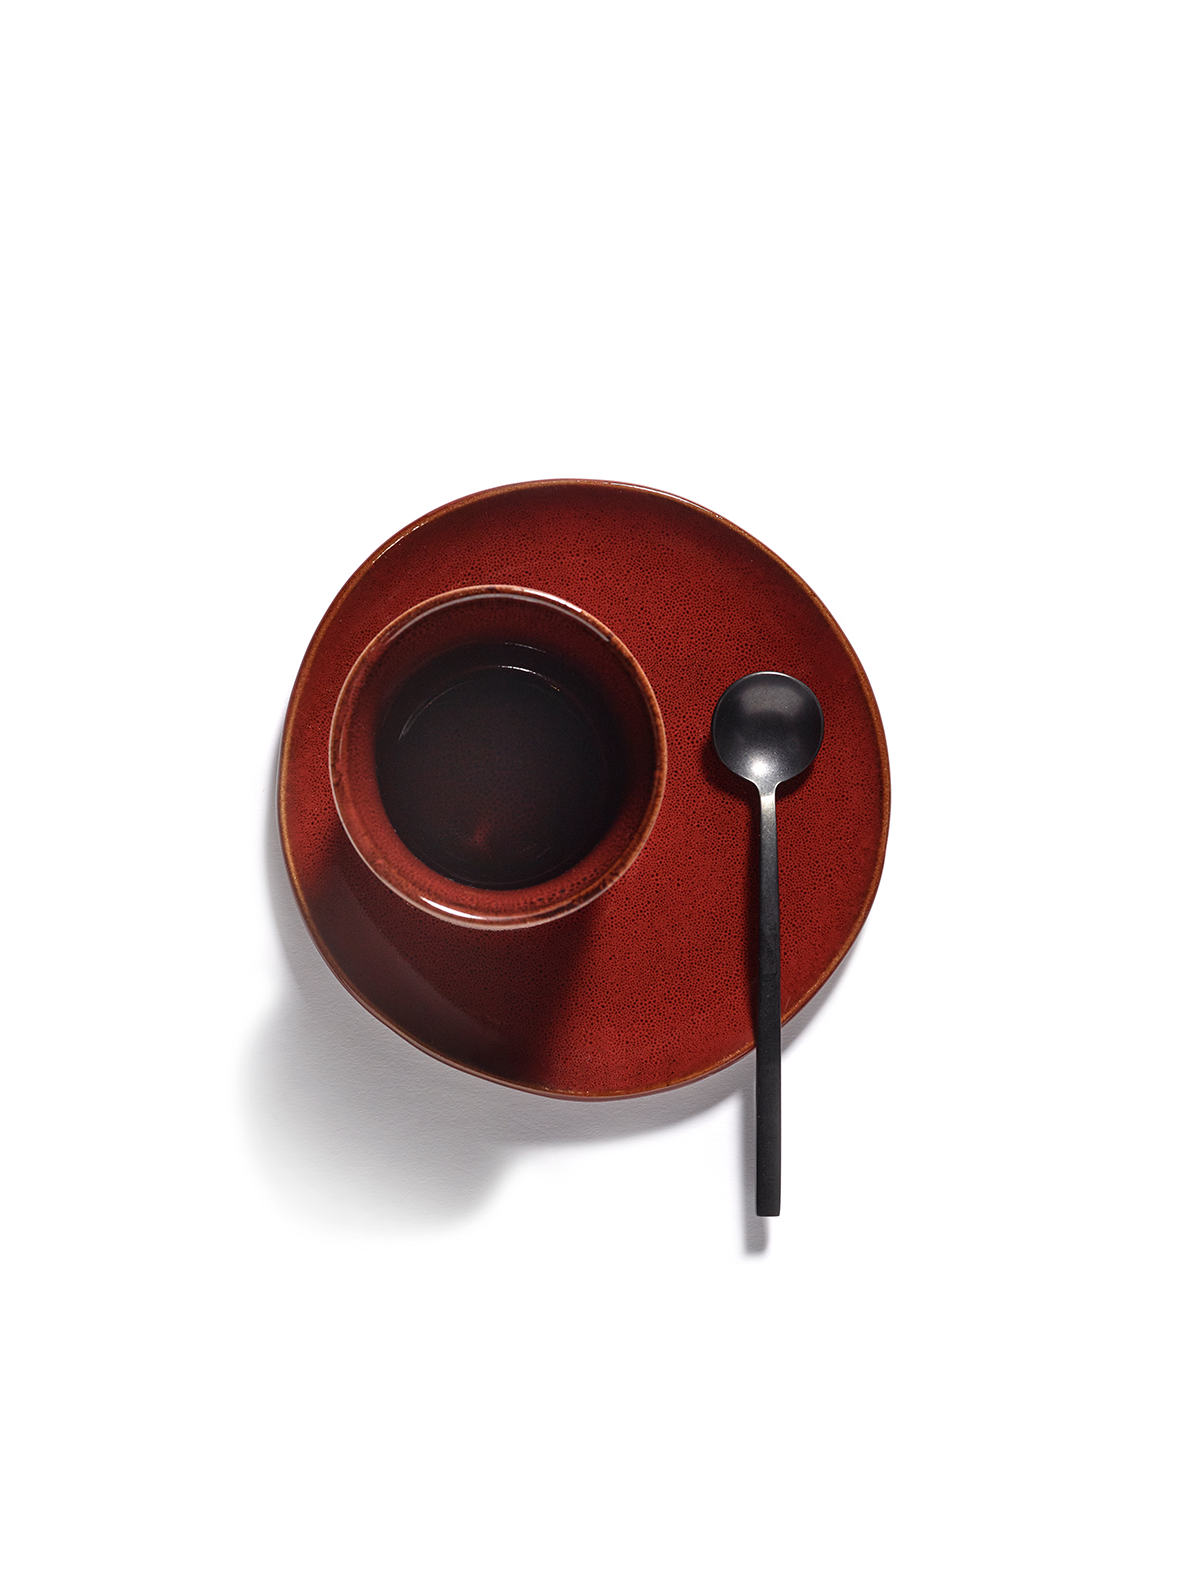 Tasse à espresso - La Mère by Marie Michielssen - Venetian red